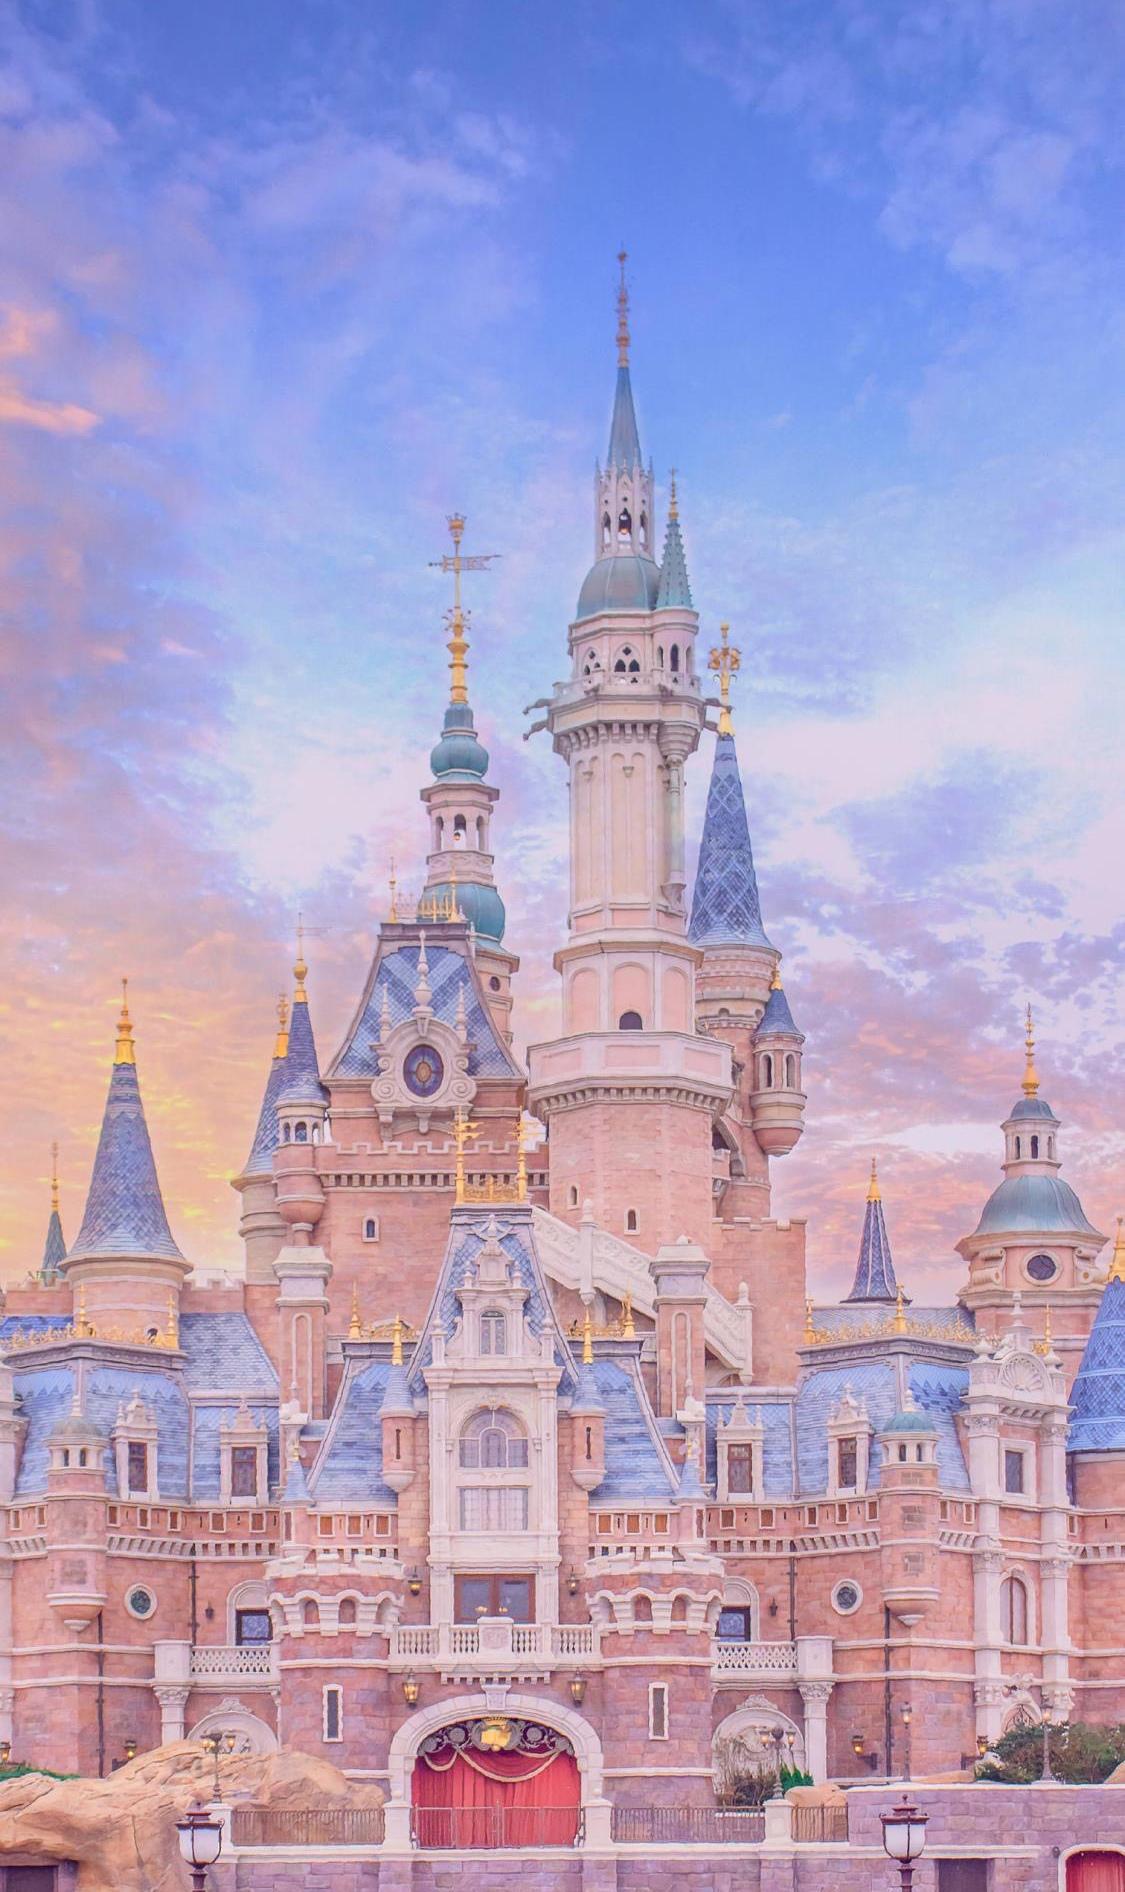 【美图分享45】迪士尼城堡高清图片集合~~生活一如童话,或许你所需的